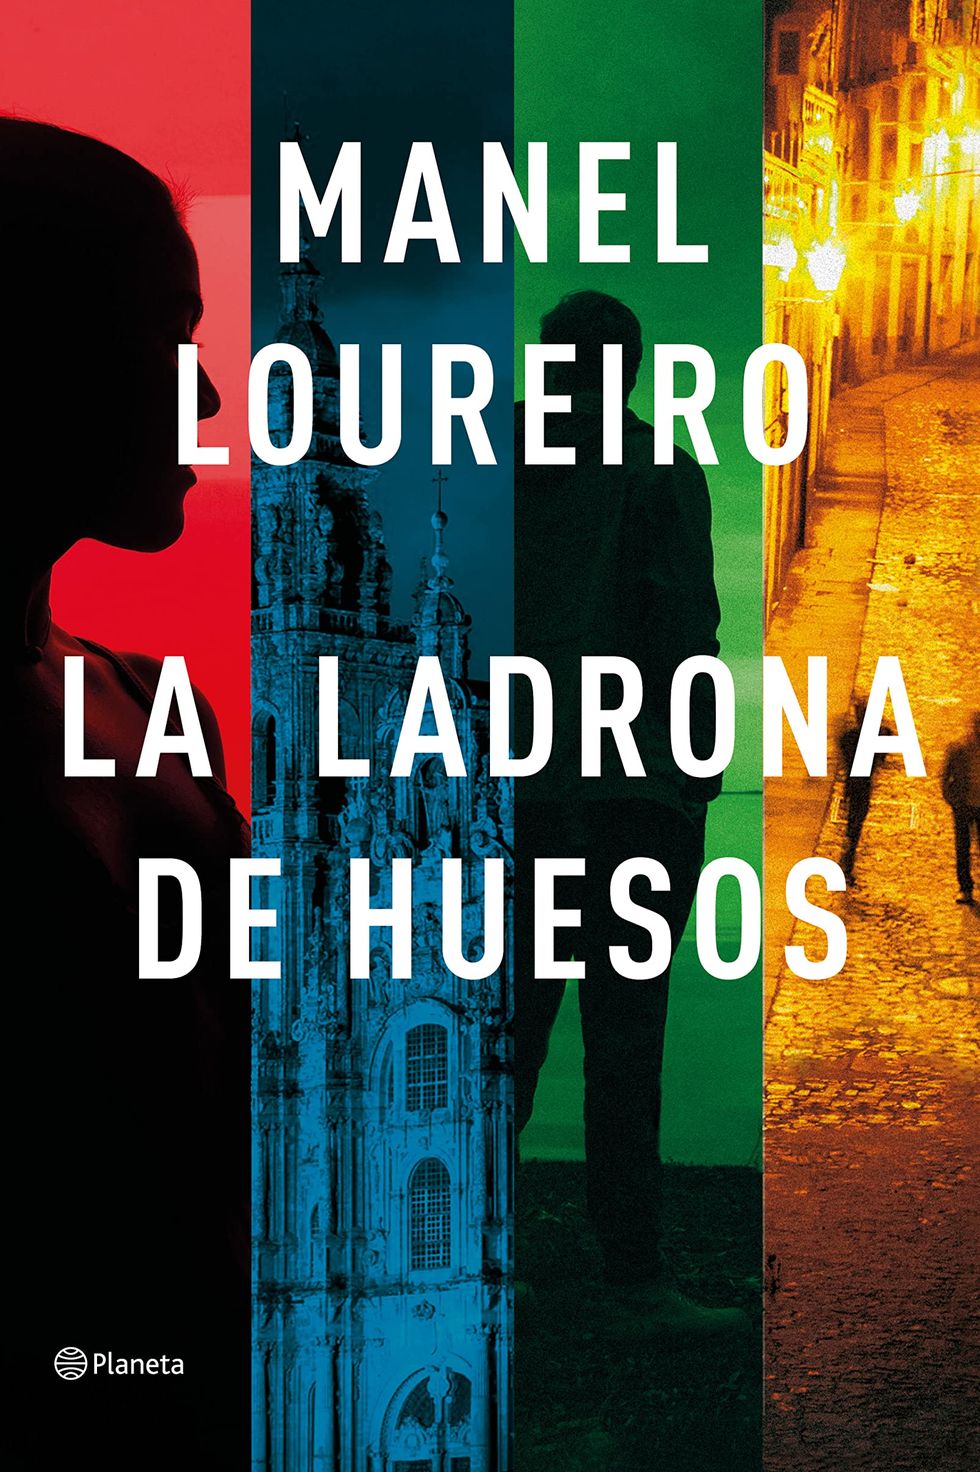 La ladrona de huesos (Autores Españoles e Iberoamericanos)